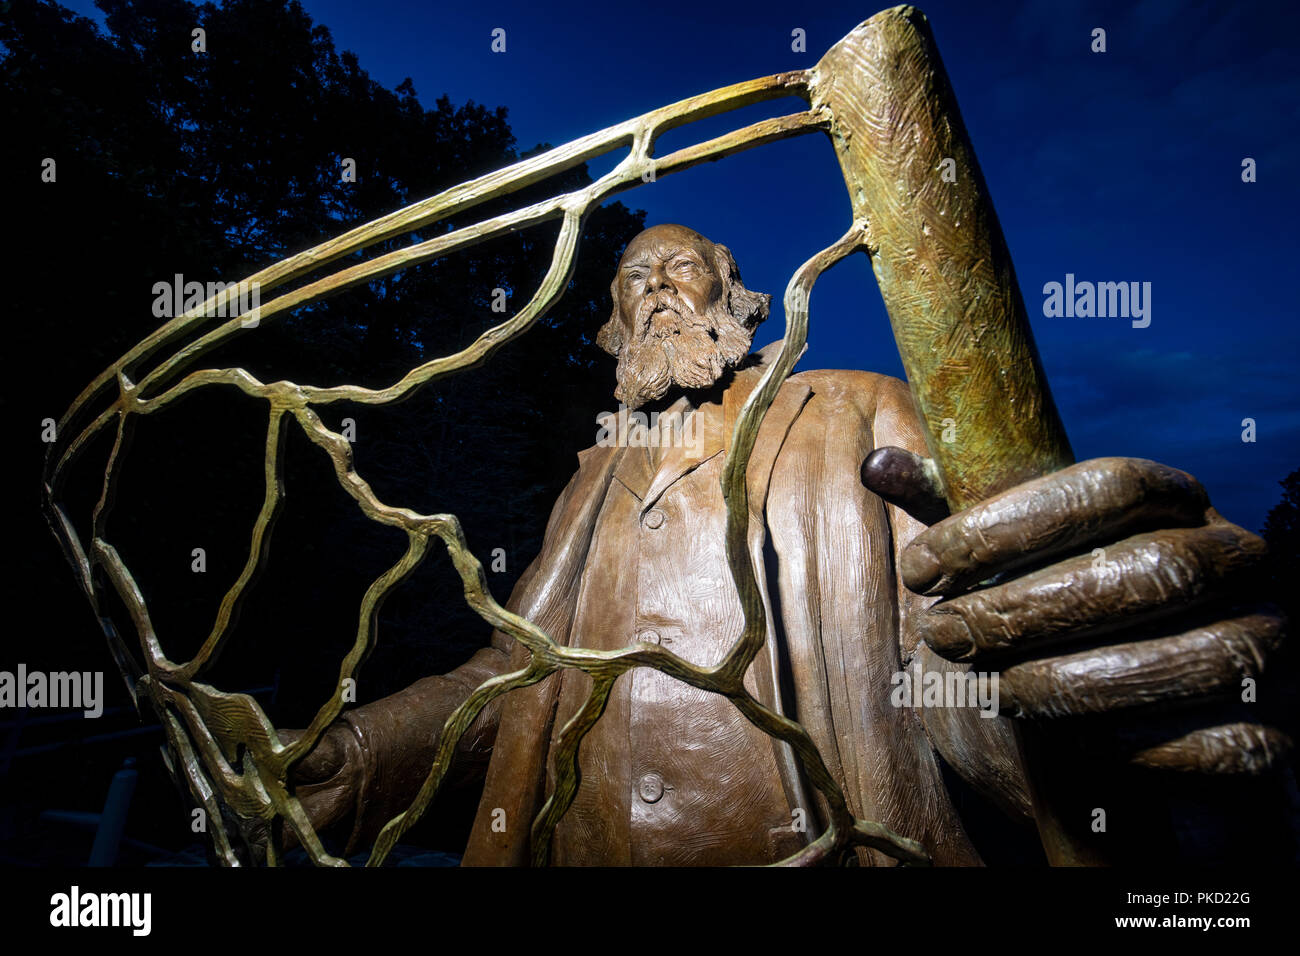 Frederick Law Olmsted - père de l'architecture du paysage américain - Statue en bronze de l'artiste Zénos Frudakis - North Carolina Arboretum, Asheville, Nort Banque D'Images